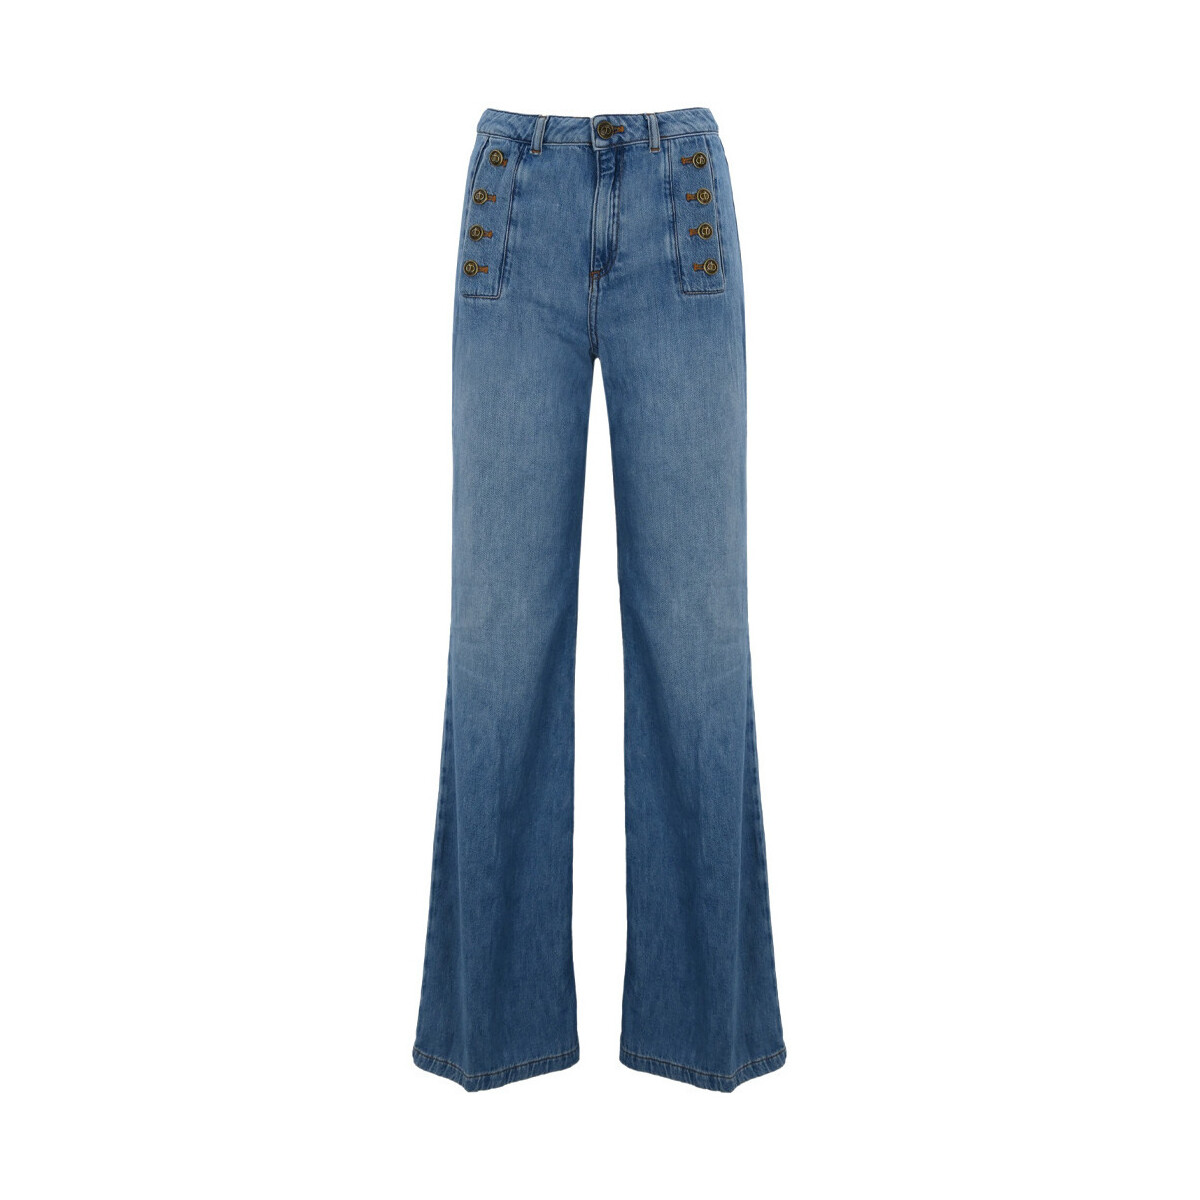 Abbigliamento Donna Jeans Twin Set 241tp2631-01611 Blu